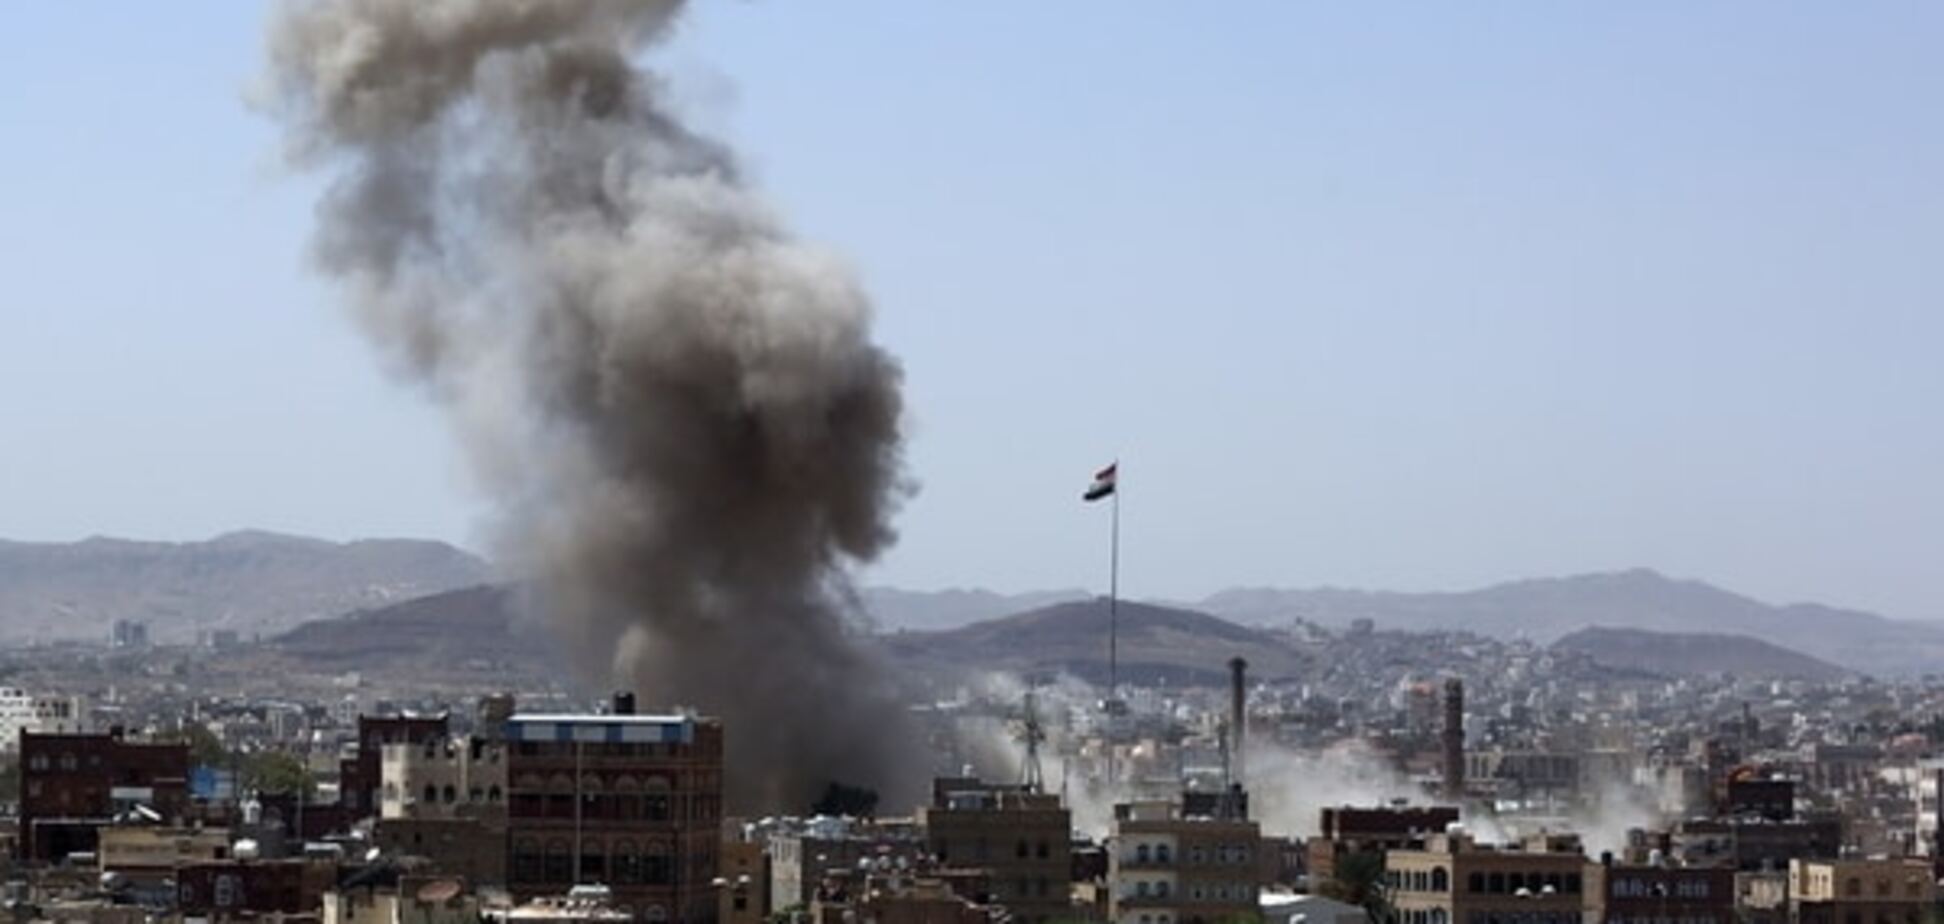 Коалиция в Йемене нанесла авиаудар по свадьбе: погибли 28 человек - СМИ